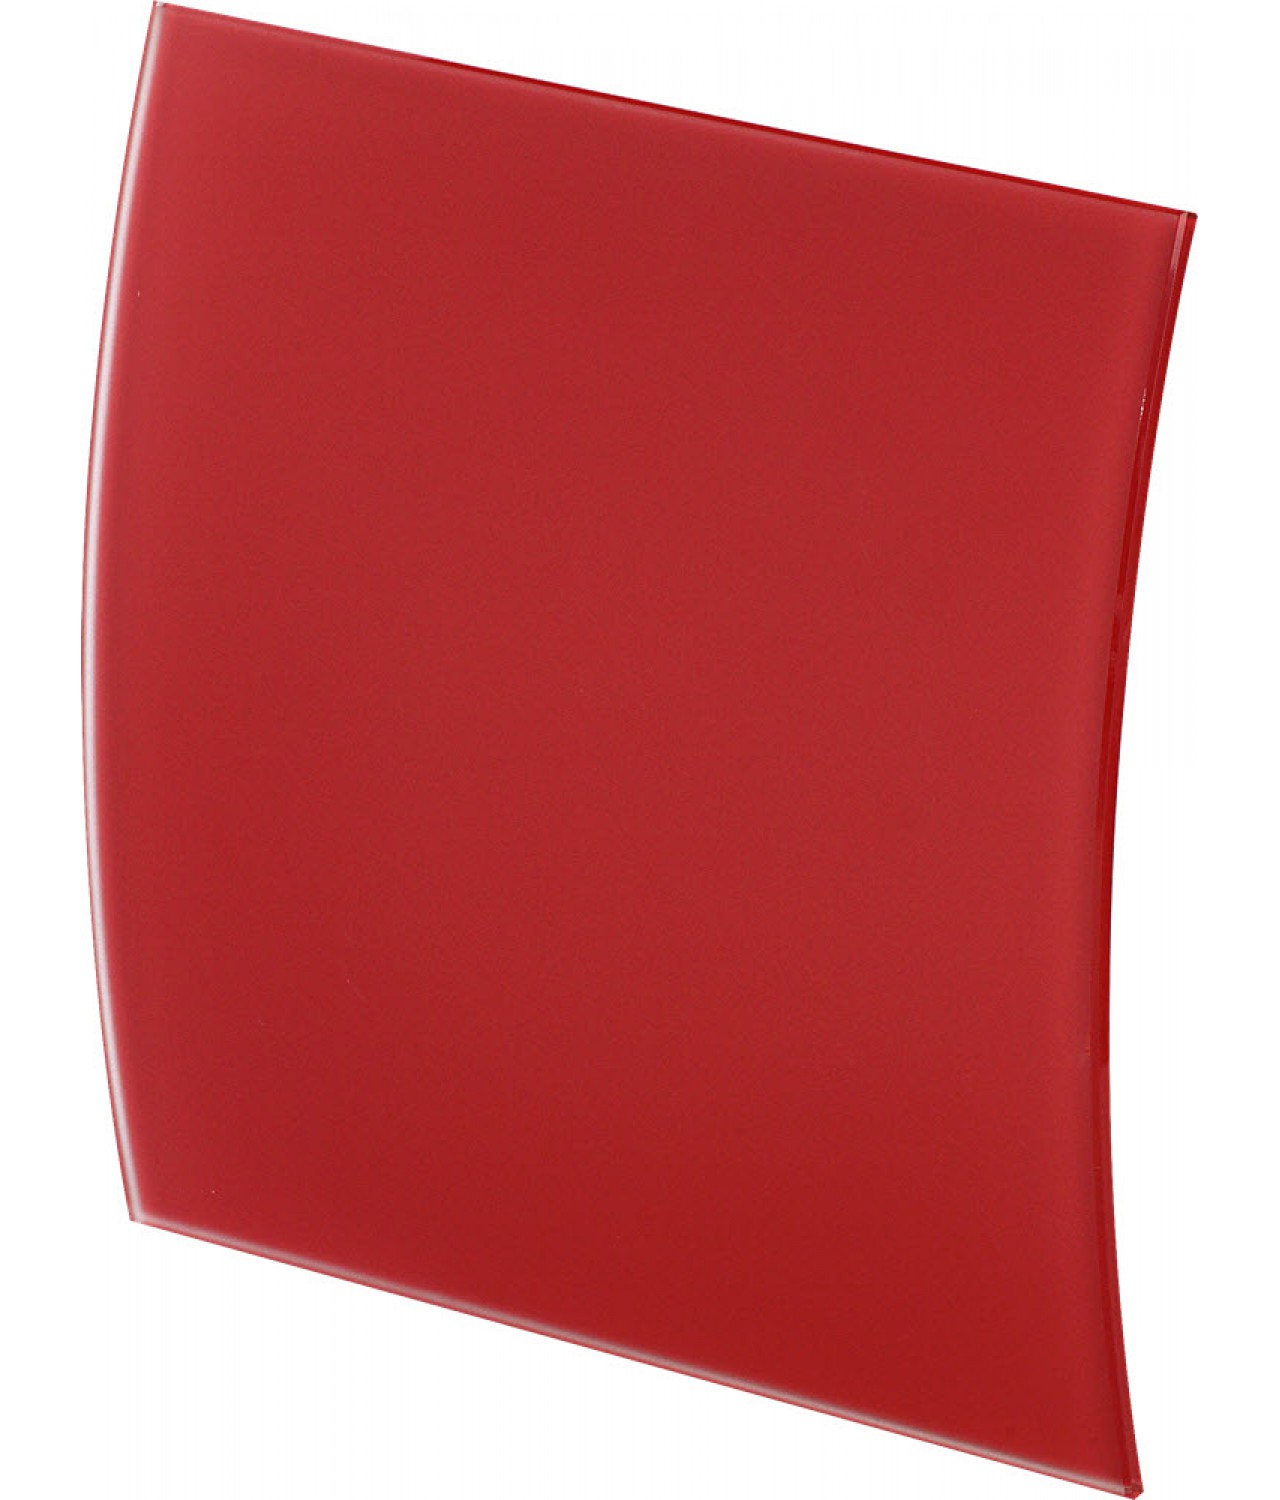 Dangtelis ventiliatoriui PEGR100M - raudonas matinis stiklas